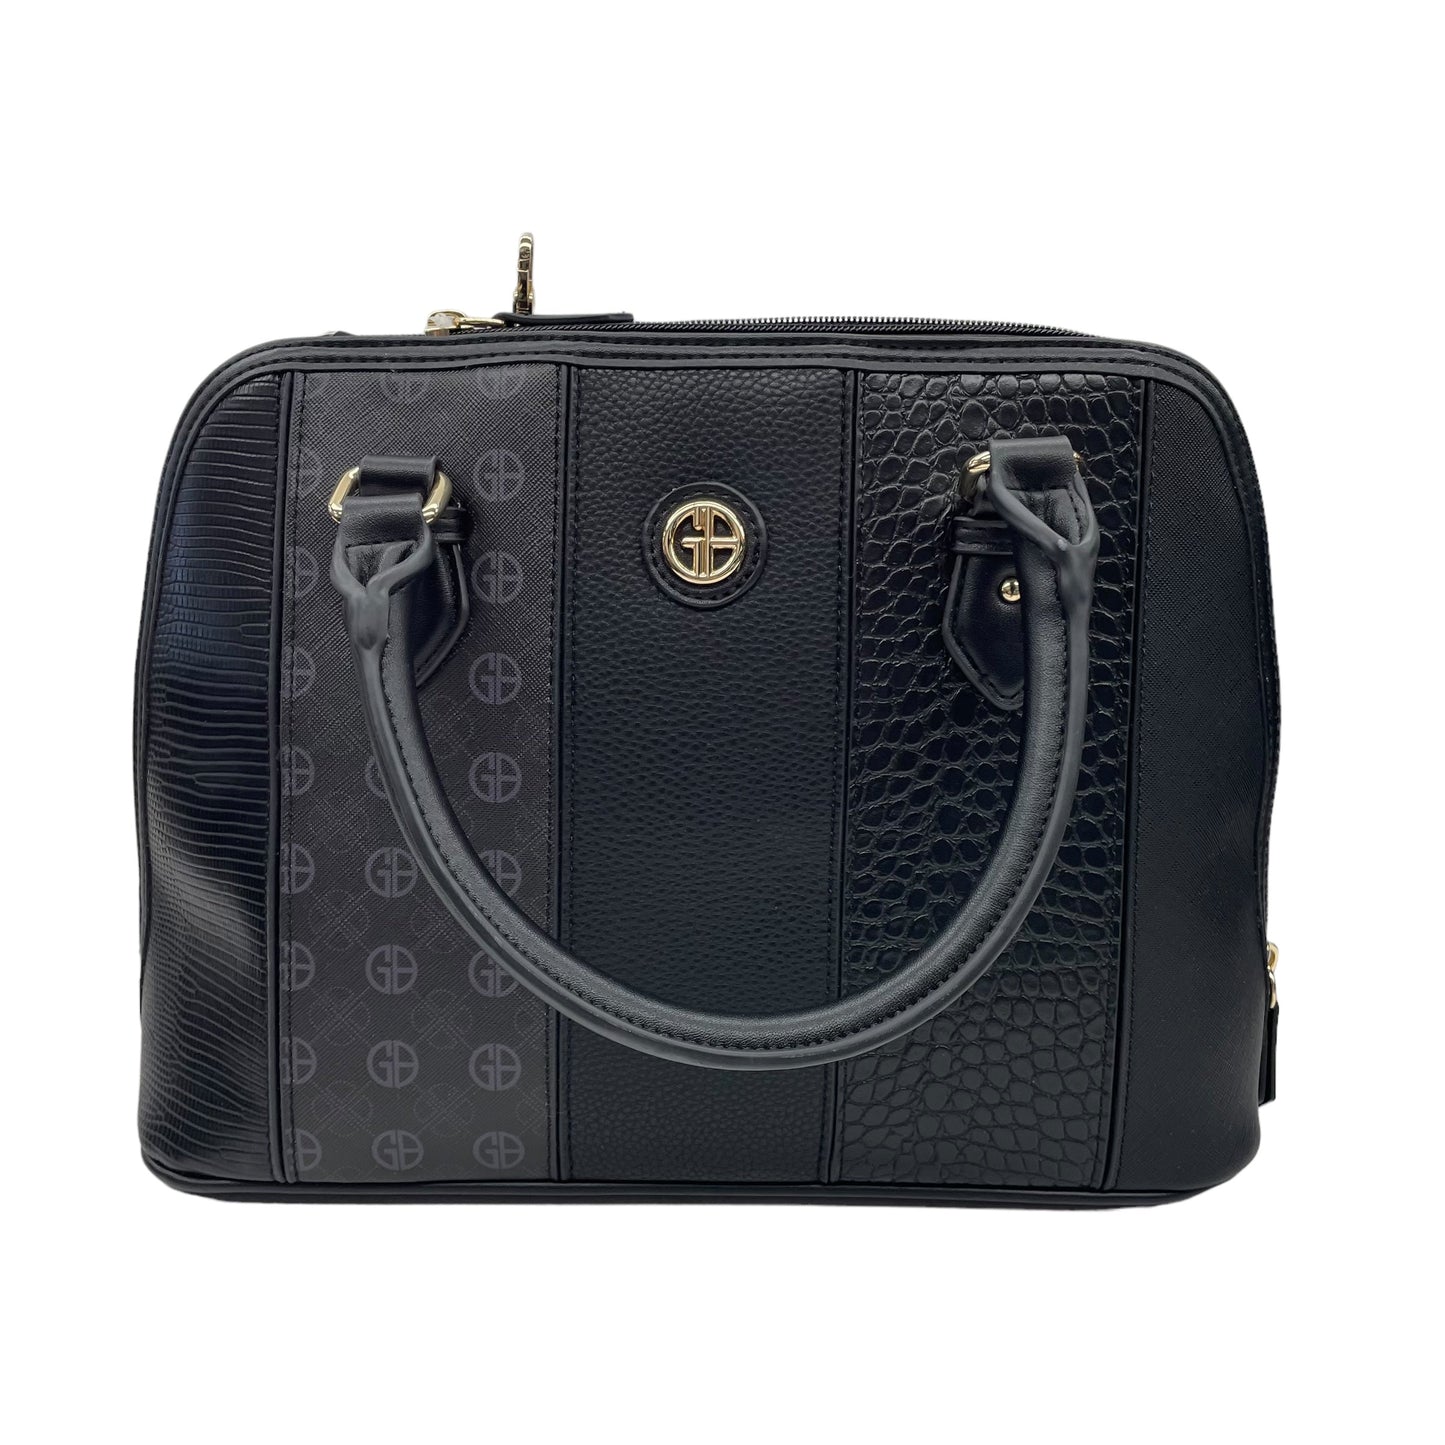 Handbag By Giani Bernini  Size: Medium